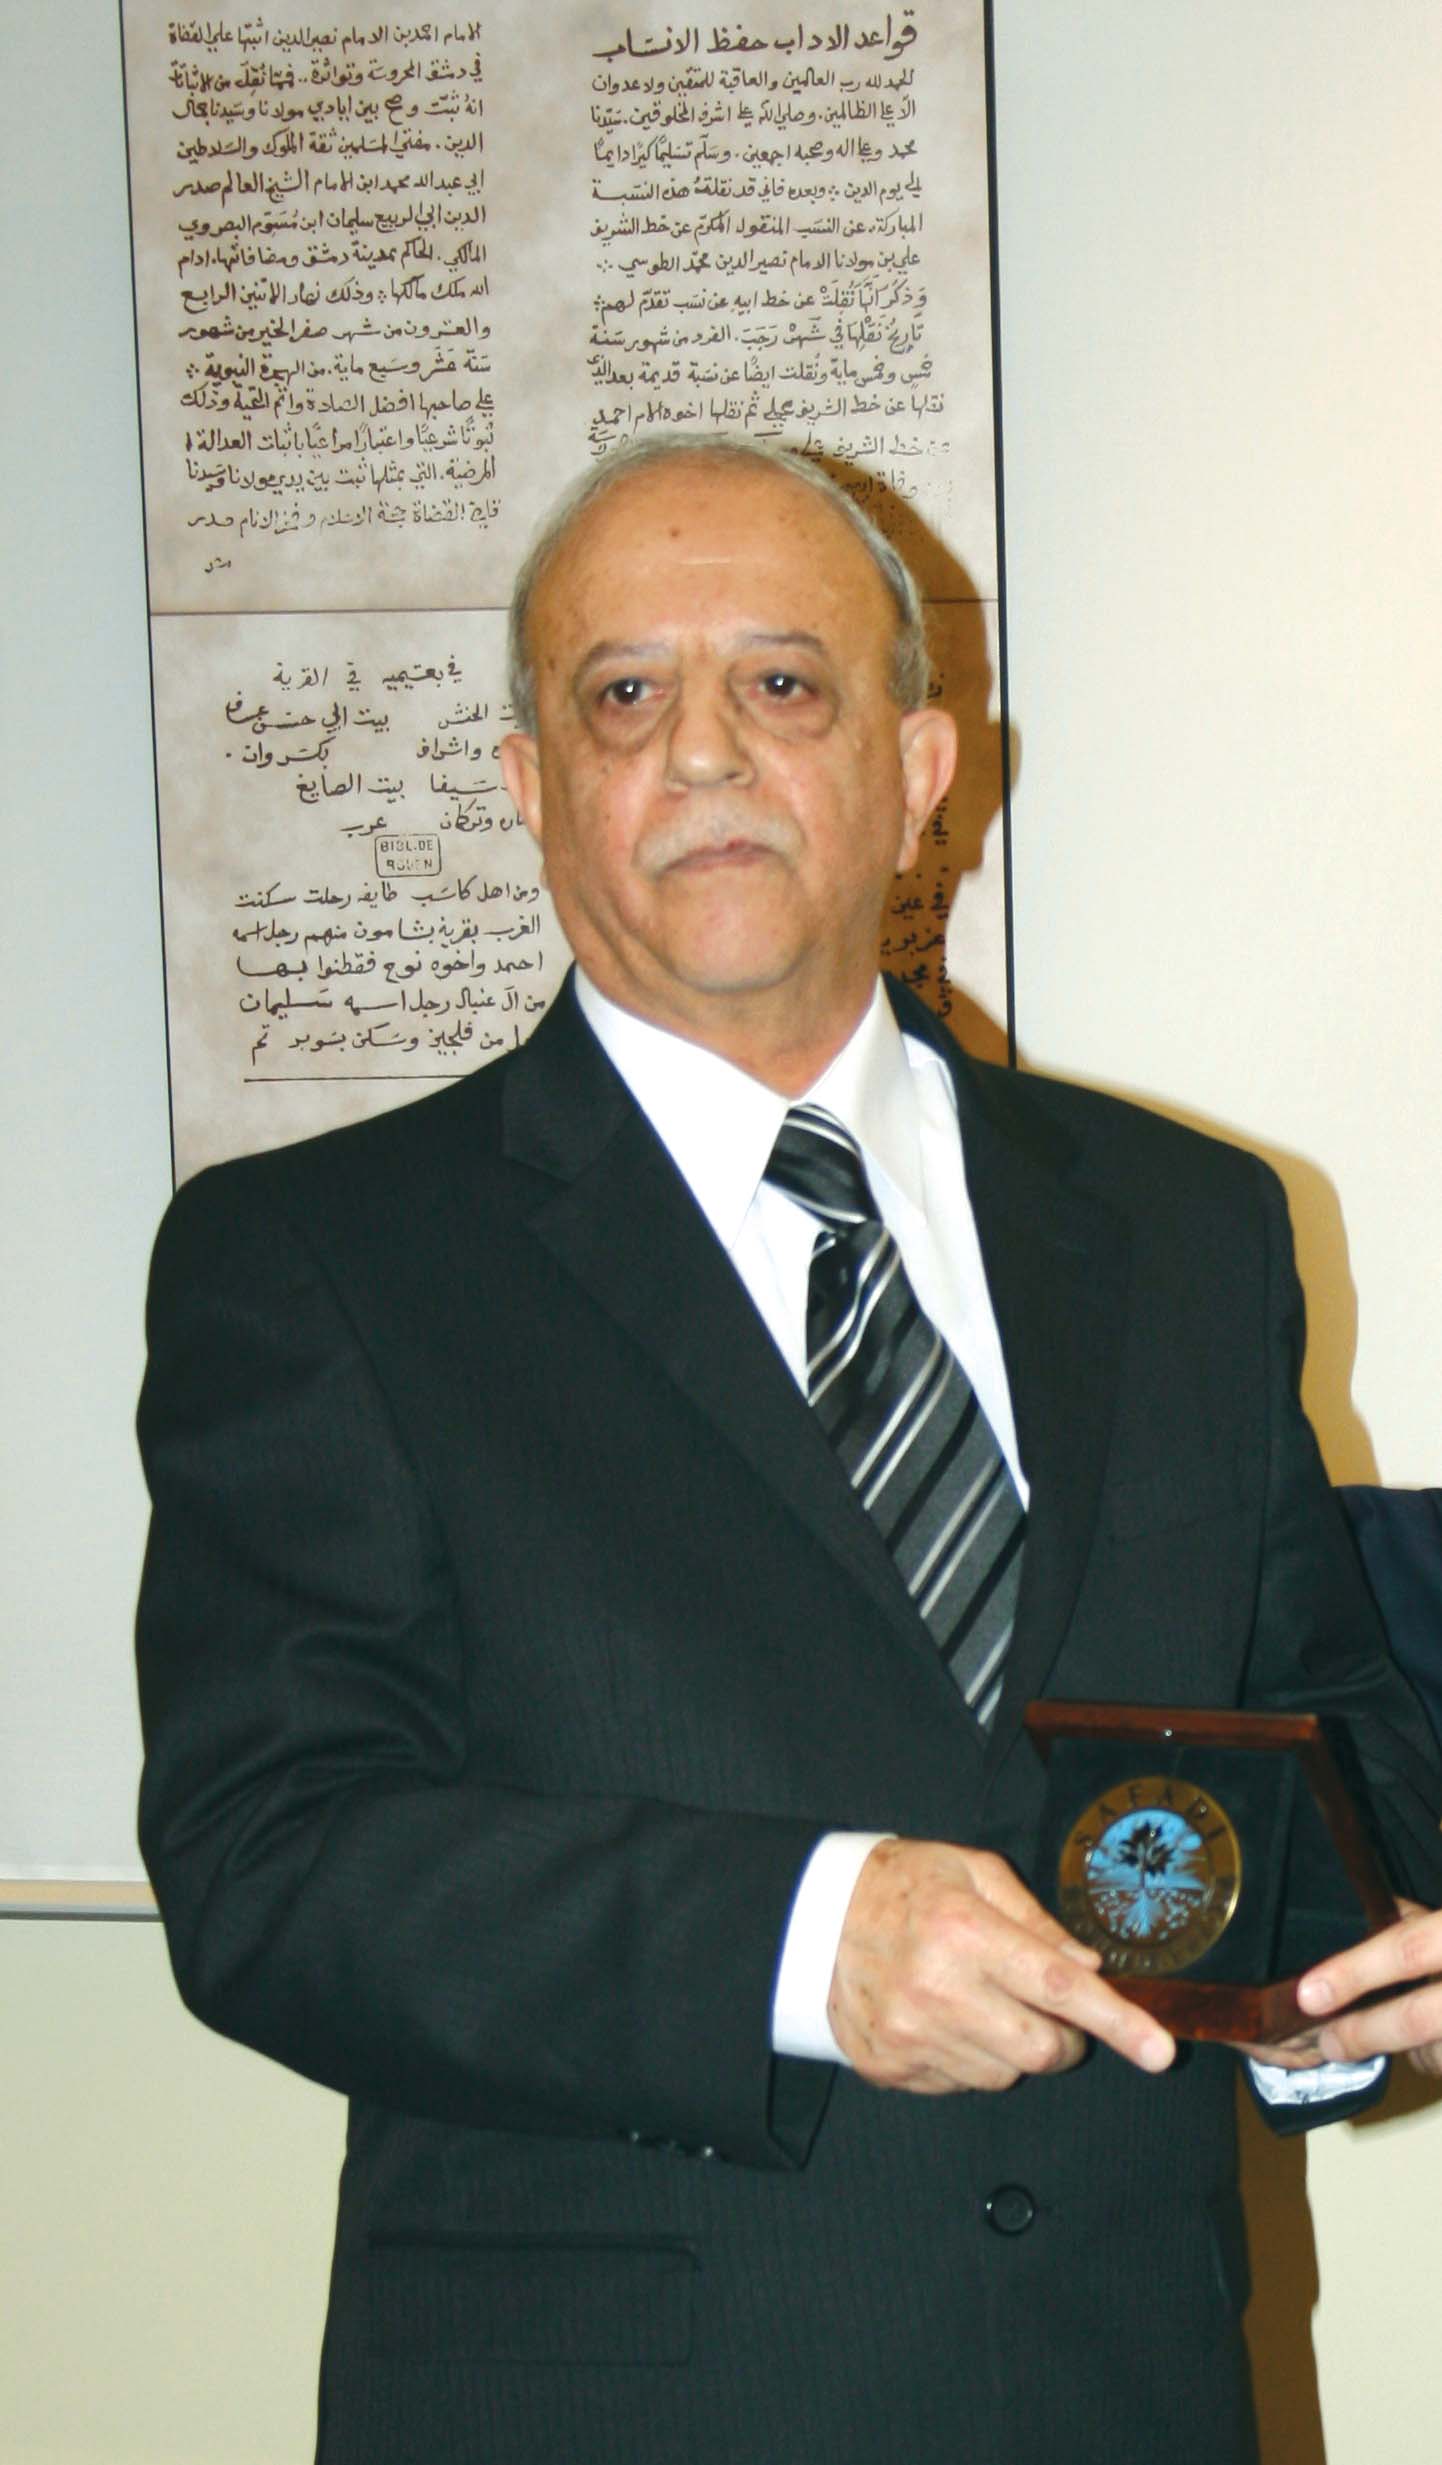 مُؤرّخ طرابلس الوَفيُّ للصحابة د. عمر عبد السلام تَدْمري (الصحابة في لبنان 11 والأخيرة).